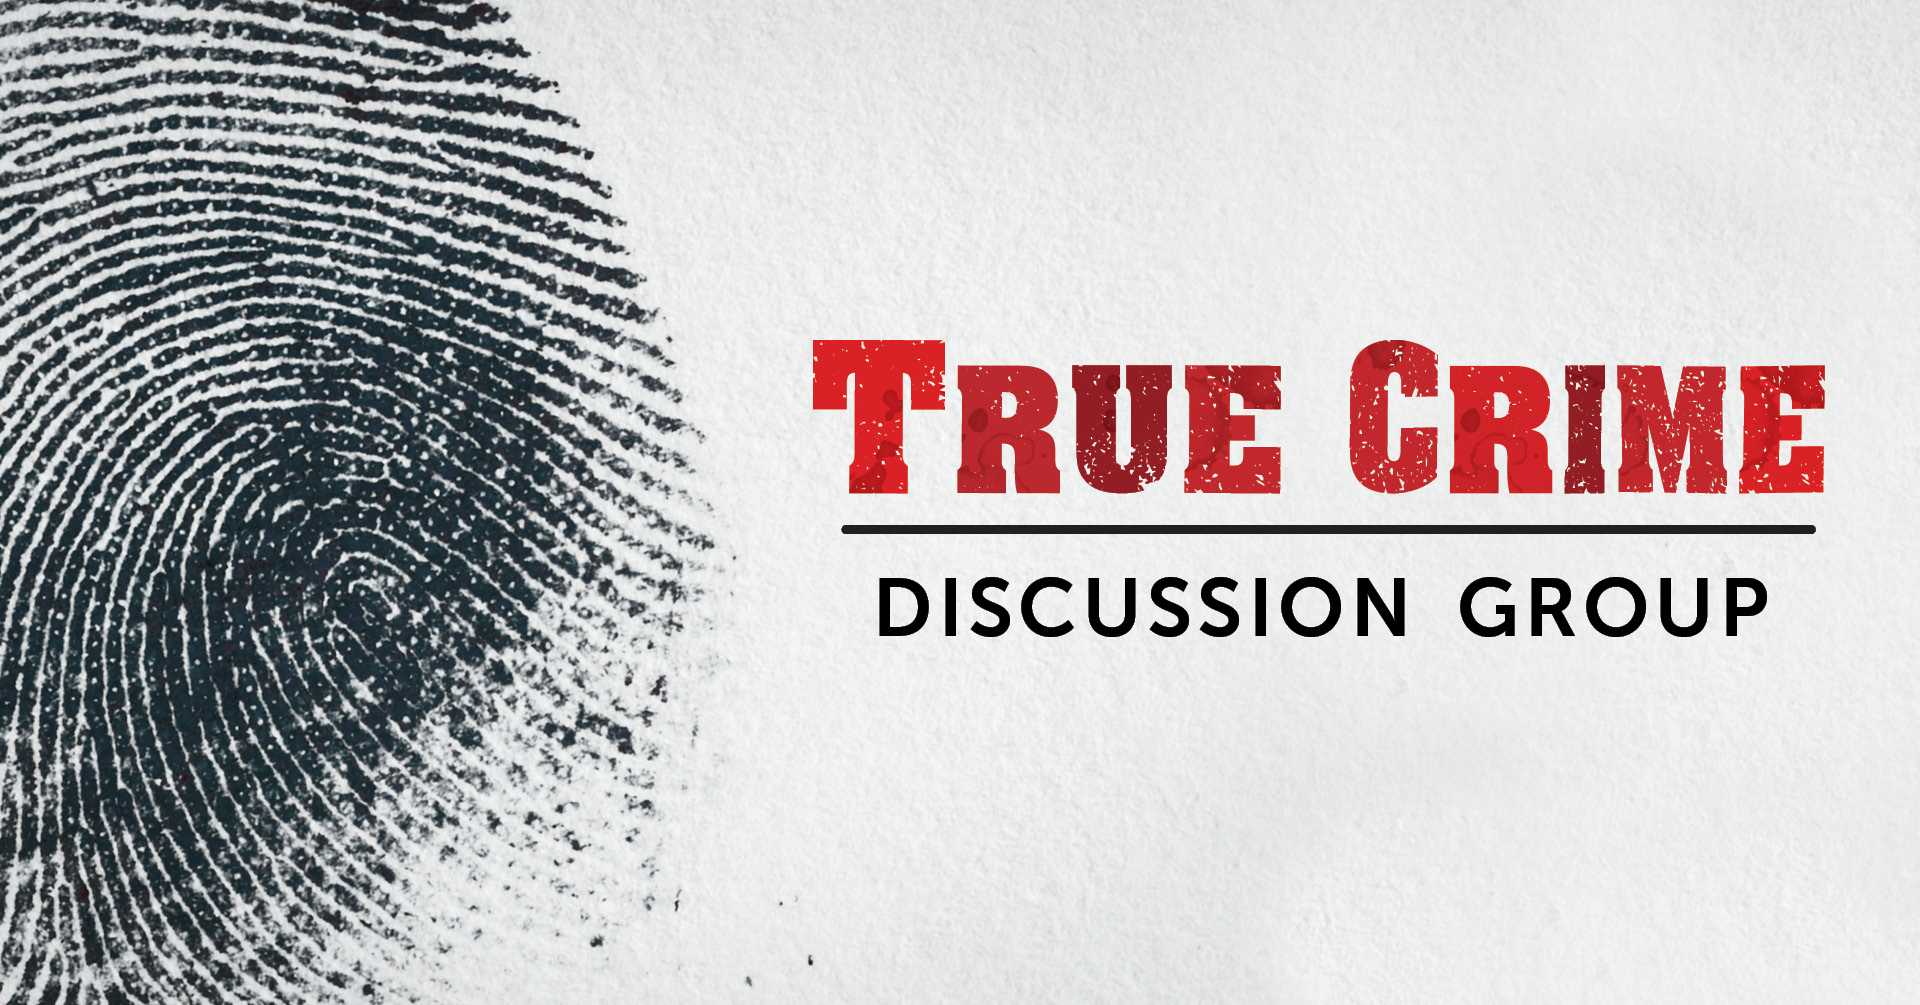 True Crime Discussion Group - fingerprint image